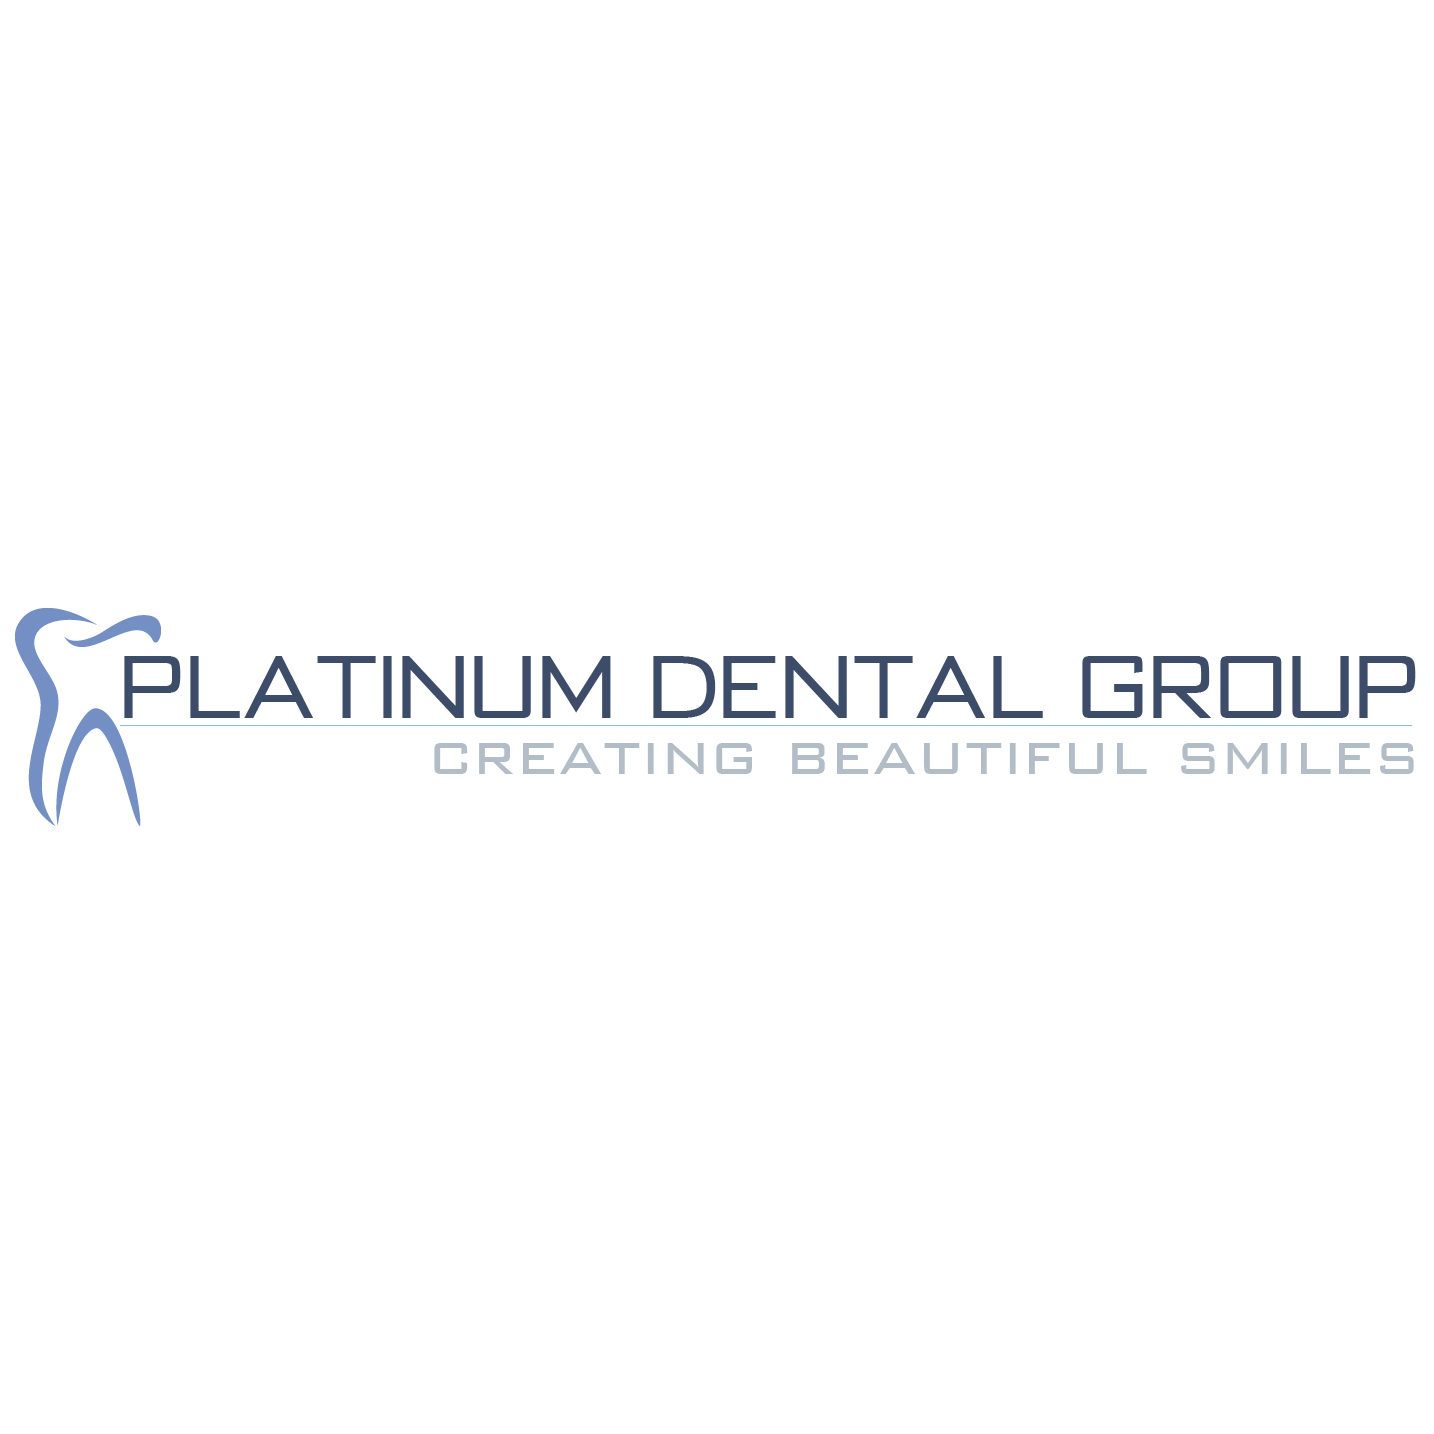 Platinum Dental Group - Secaucus 761 Humboldt St, Secaucus New Jersey 07094